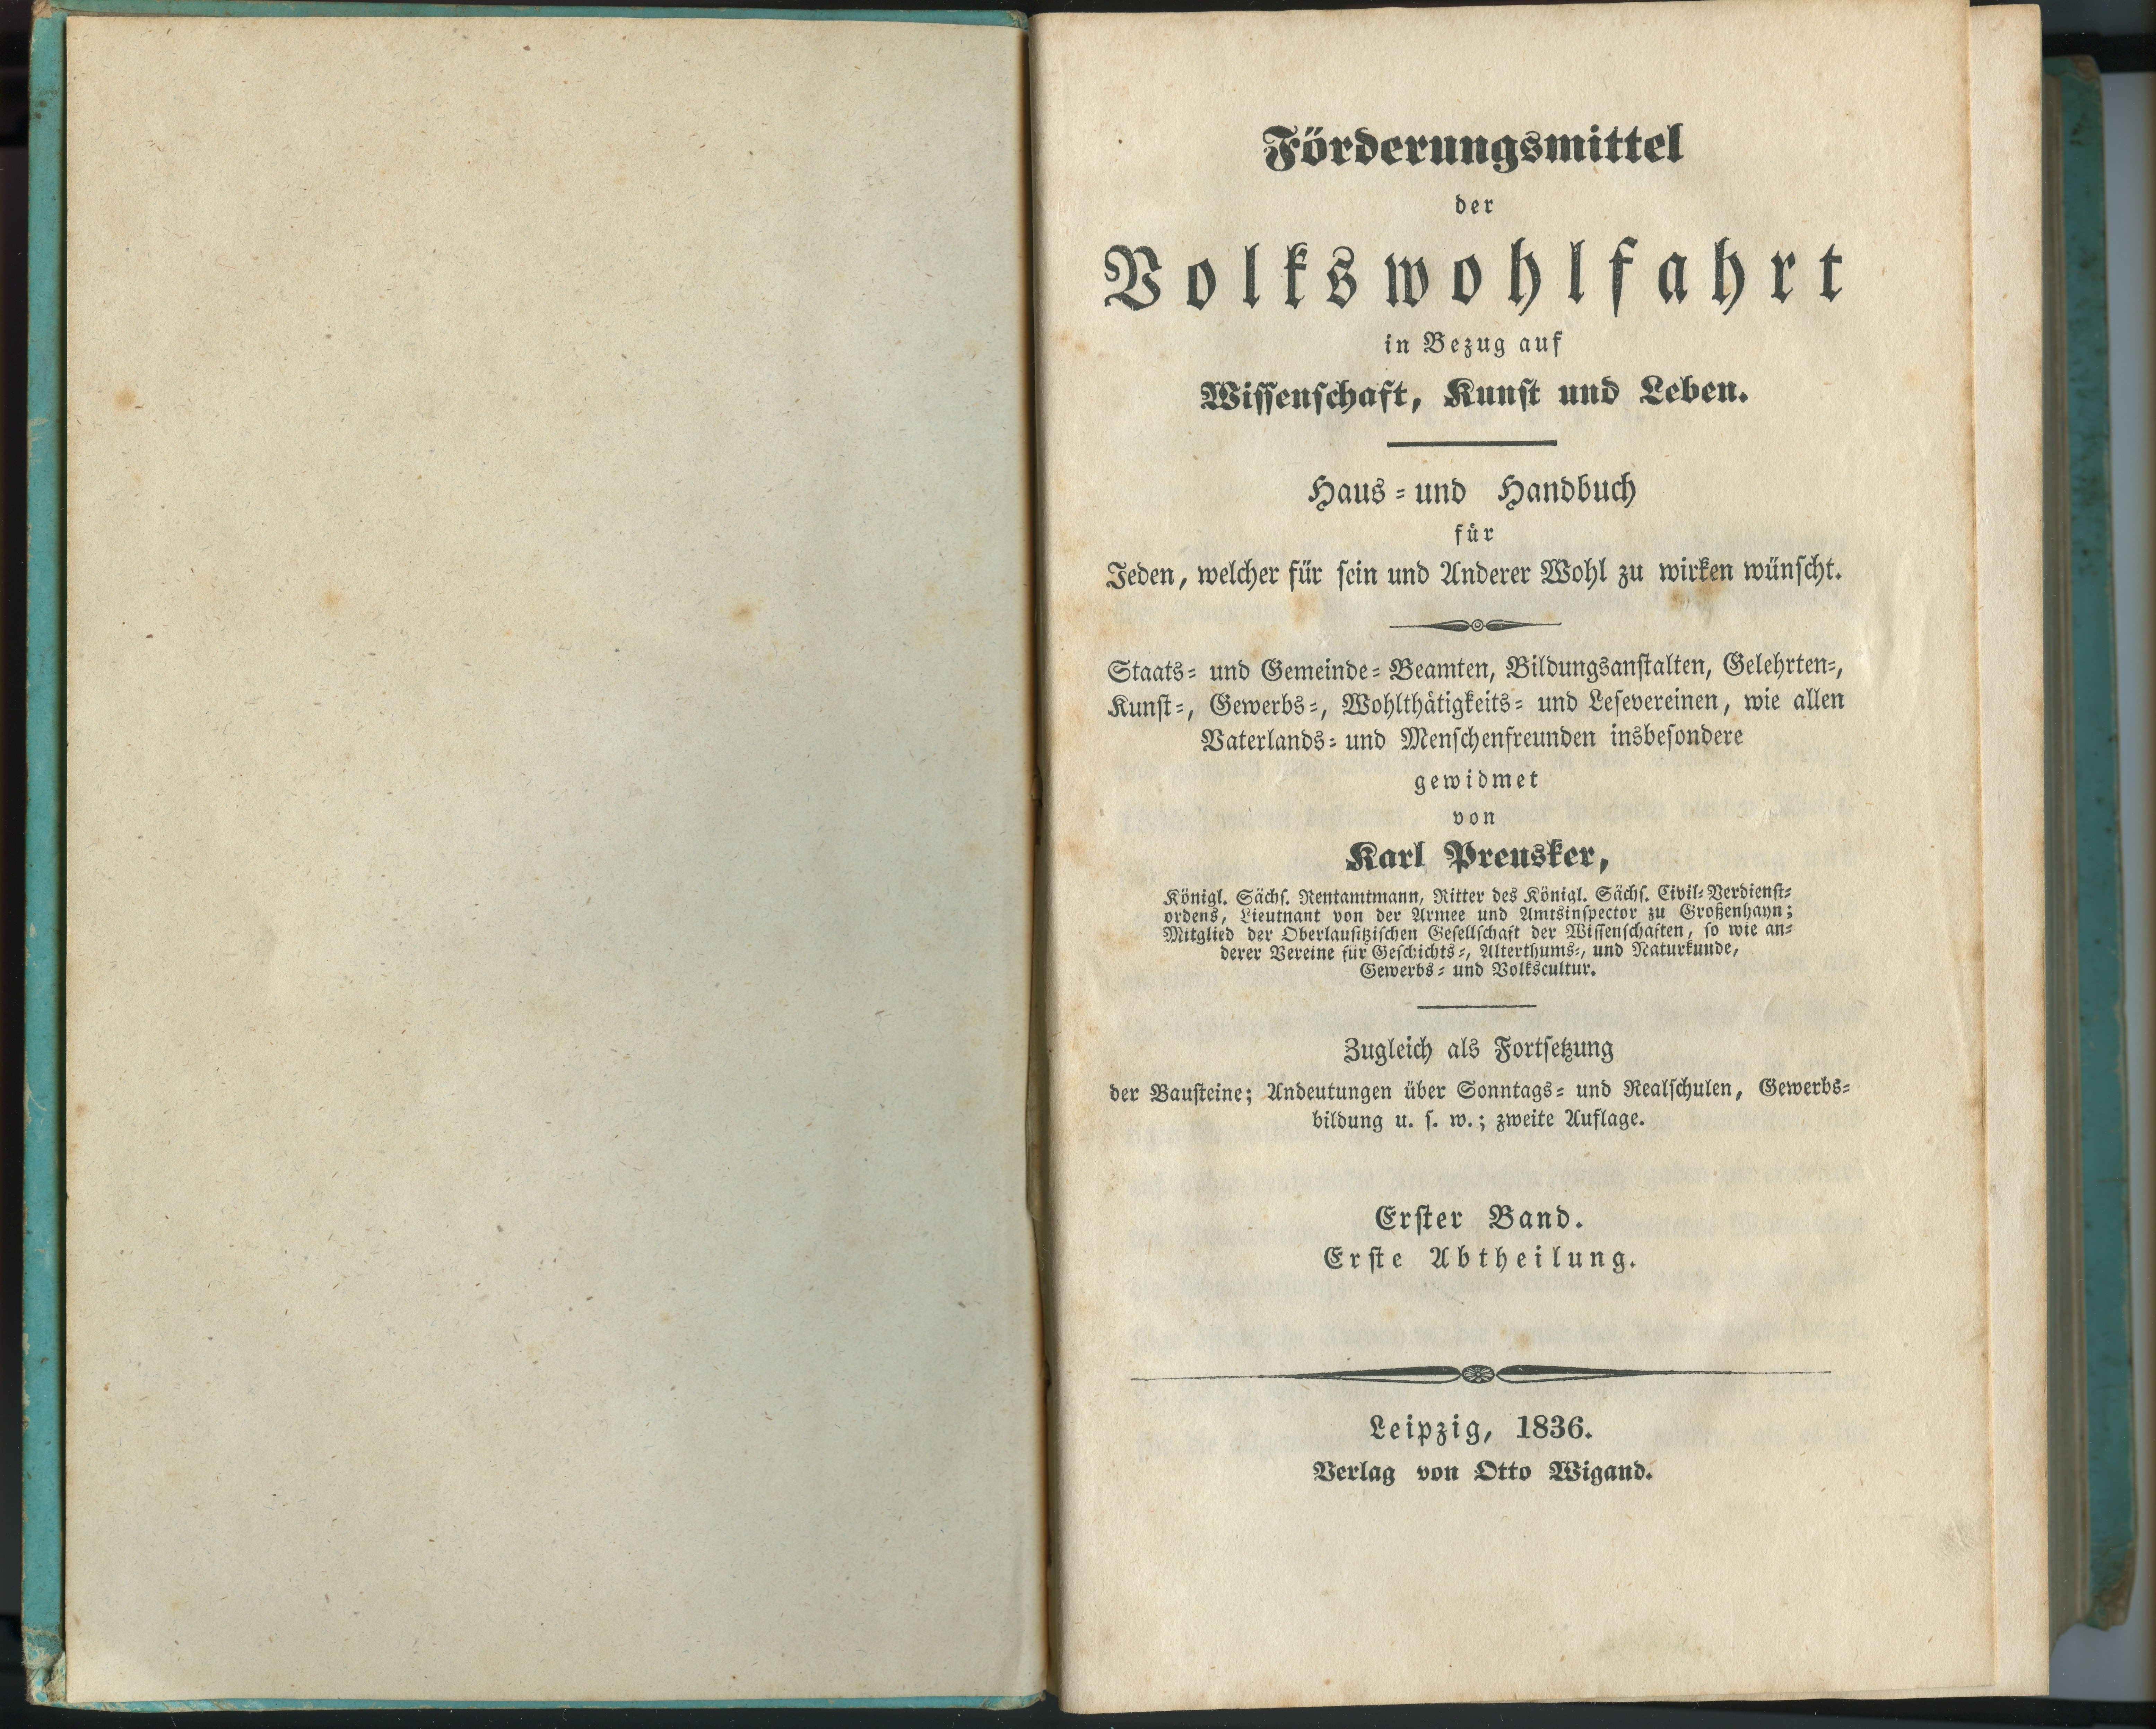 Preusker, Karl: Förderungsmittel der Volkswohlfahrt [...], 2. Auflage. I/1 1836 (Museum Alte Lateinschule CC BY-NC-SA)